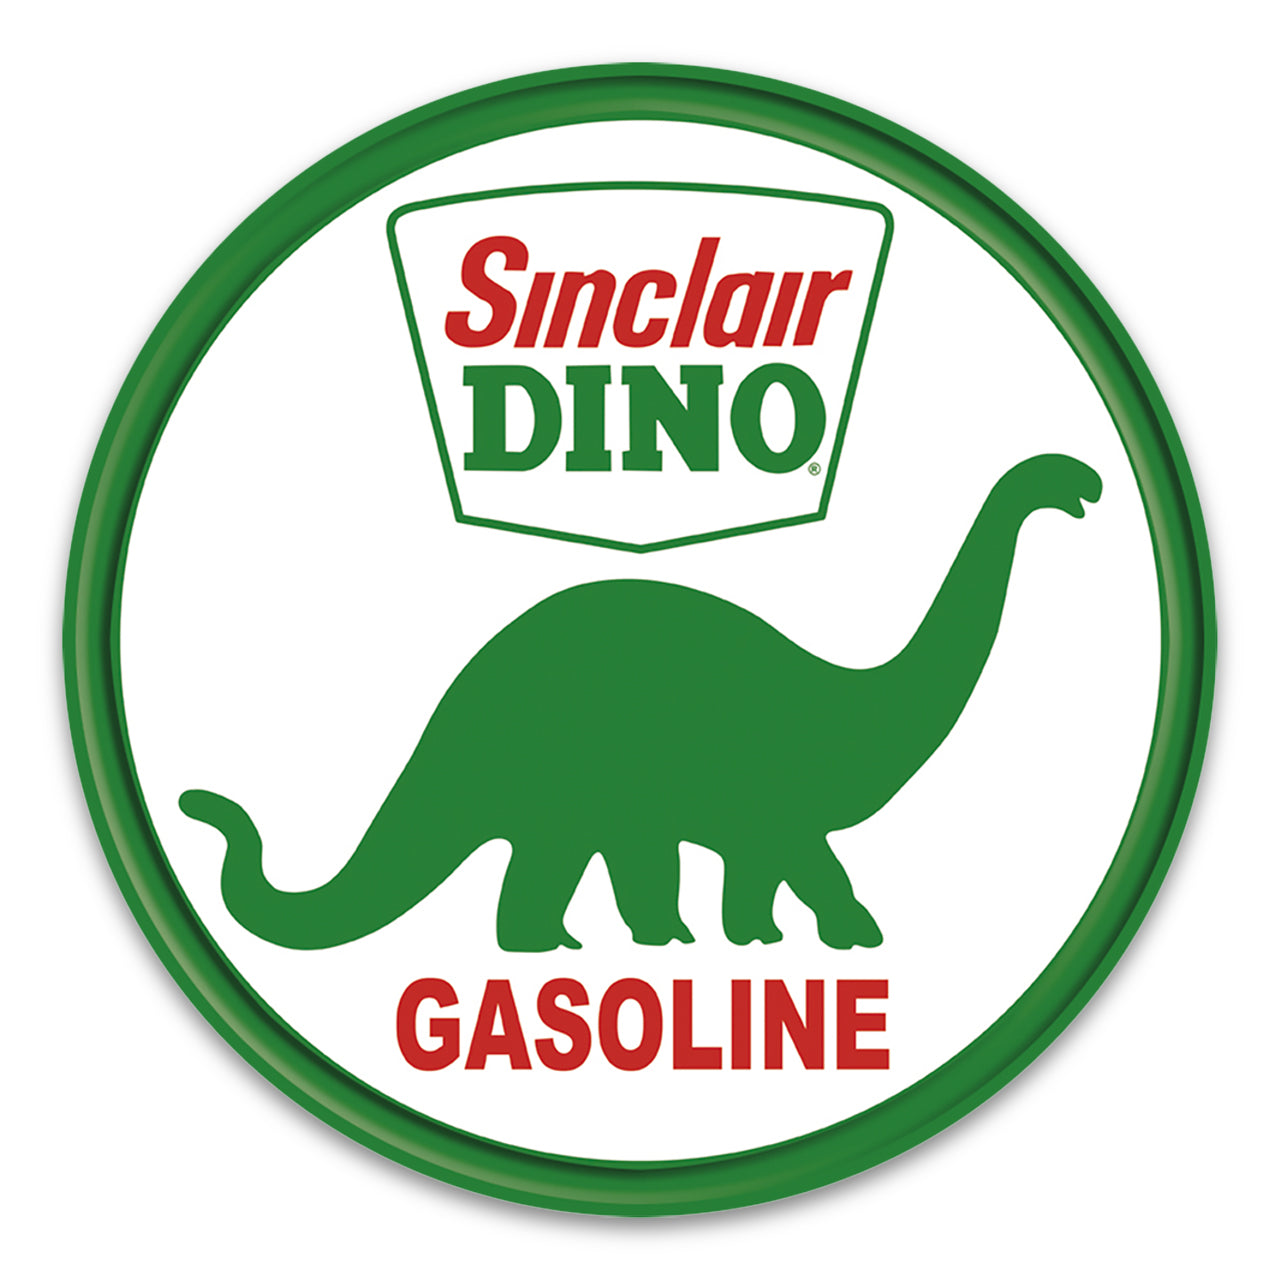 Sinclair Dino Gasoline Sign